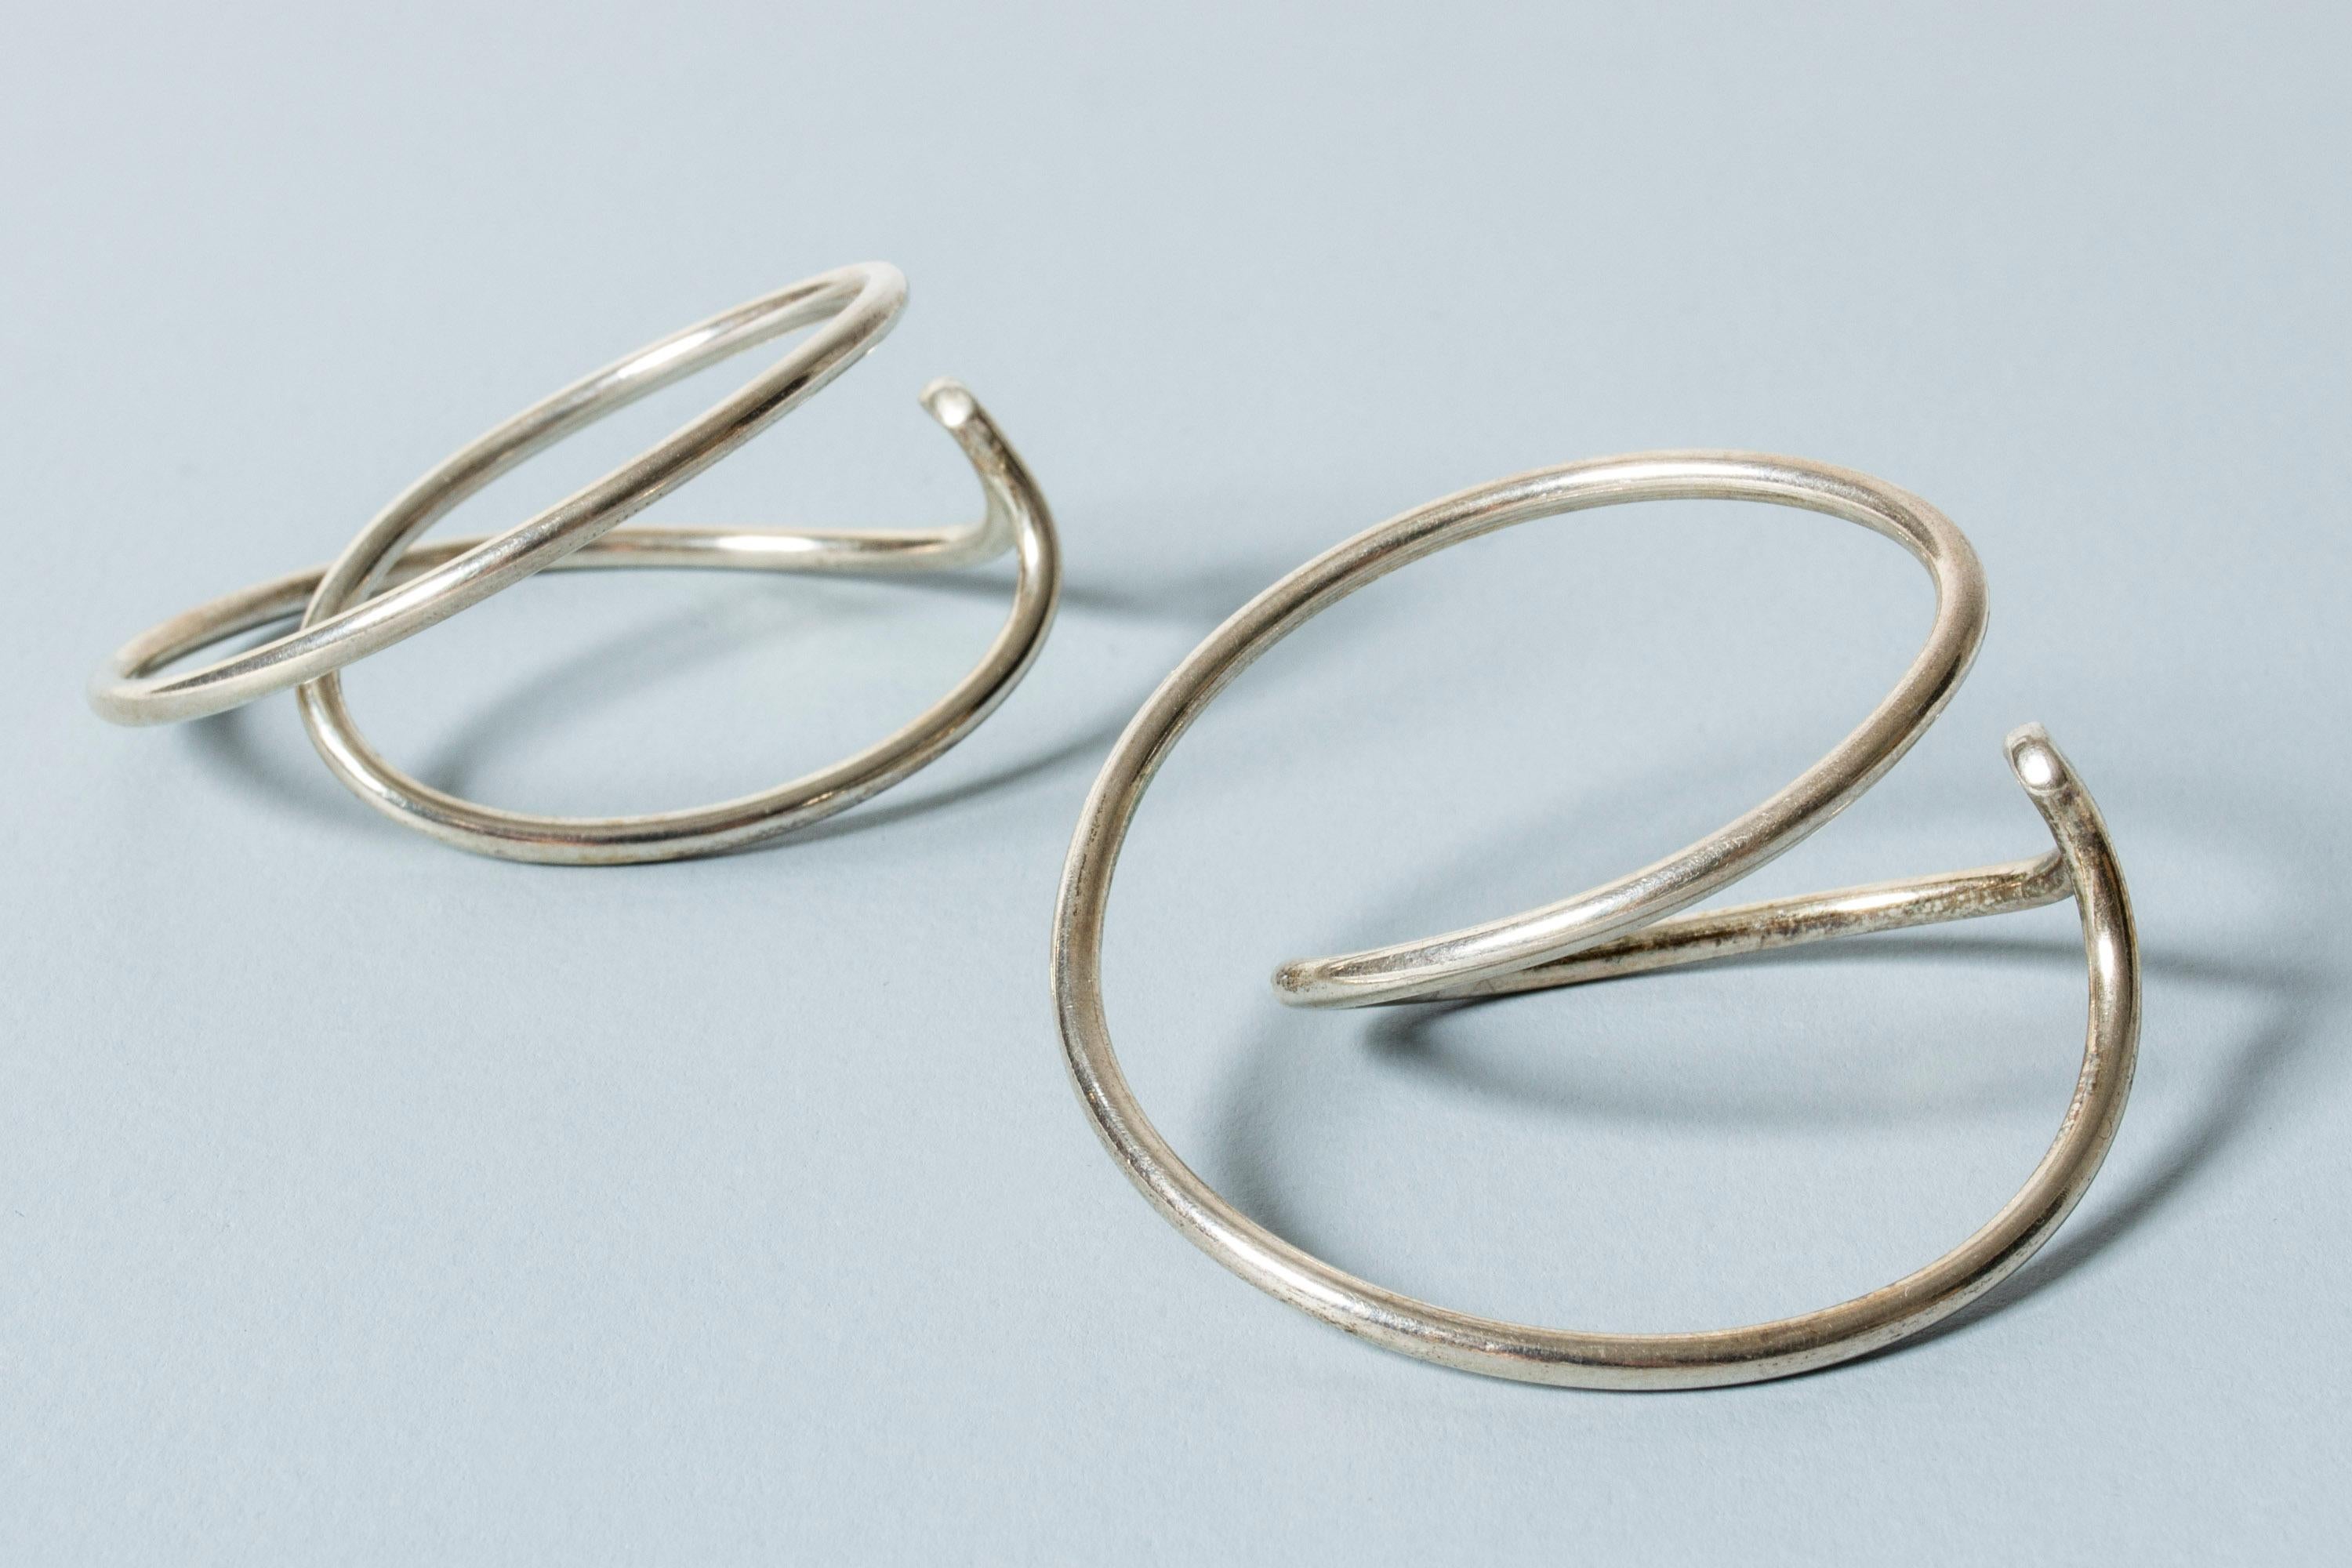 Modernist Silver “Swing” Earrings by Allan Scharff, Denmark, 1980s